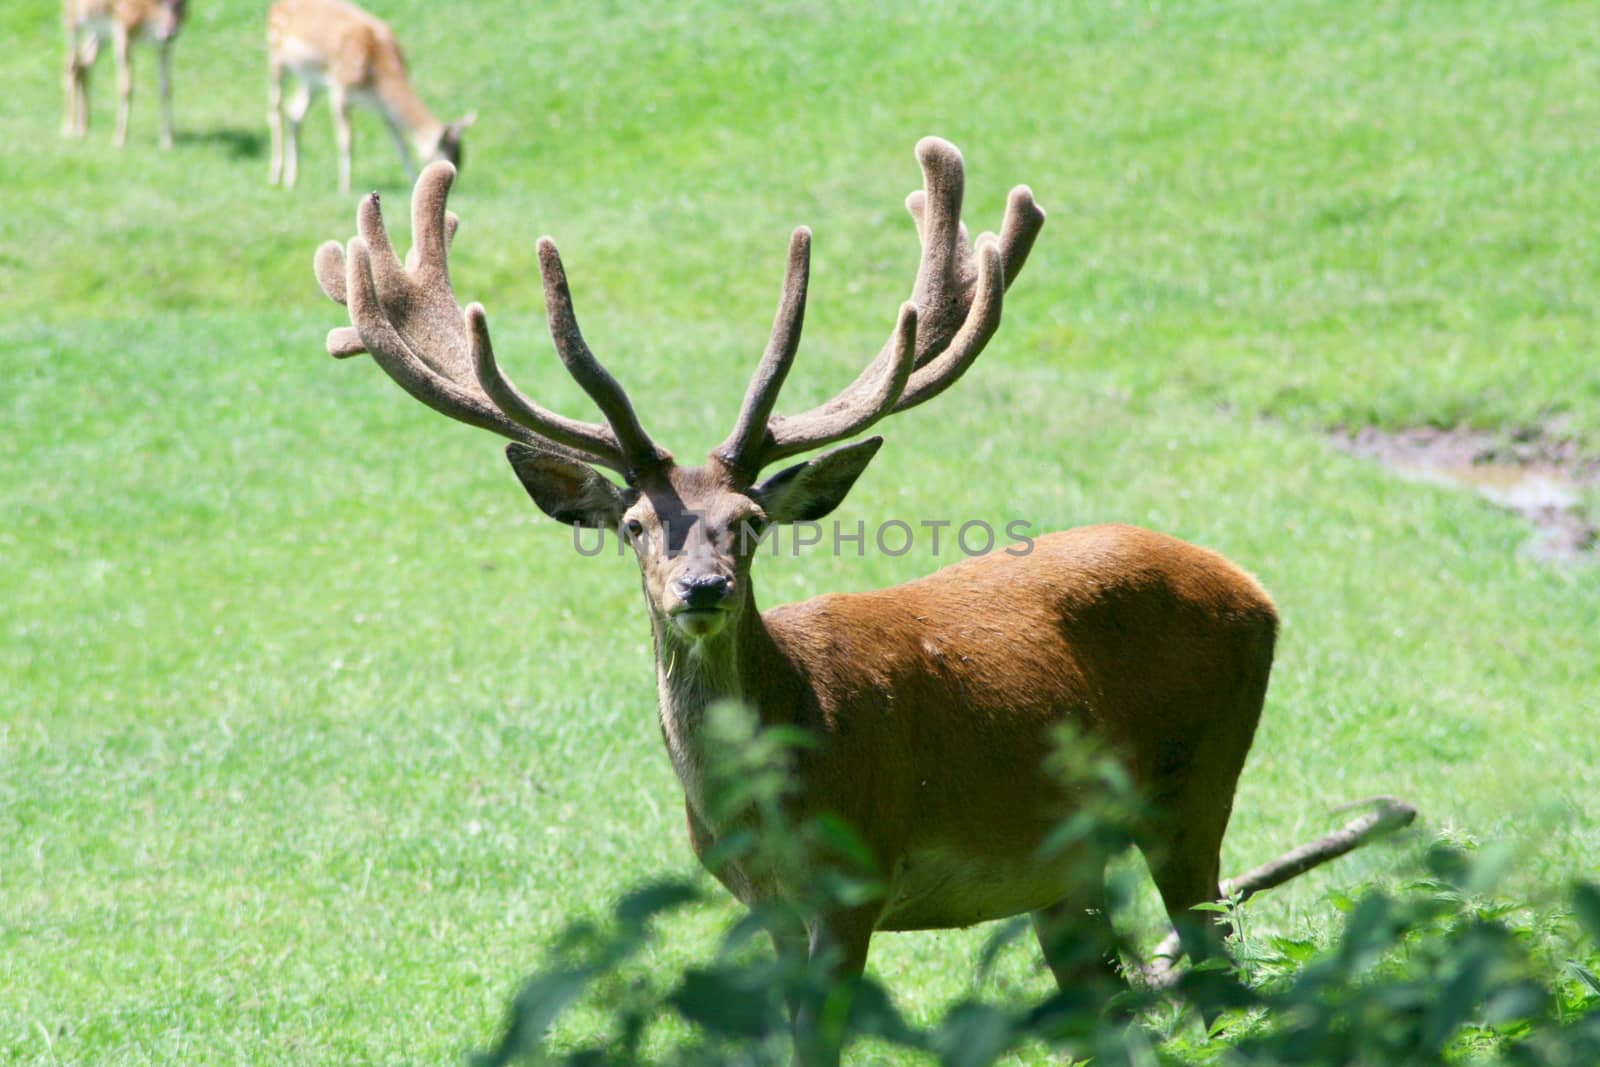 An imposing red deer bull's antlers in velvet